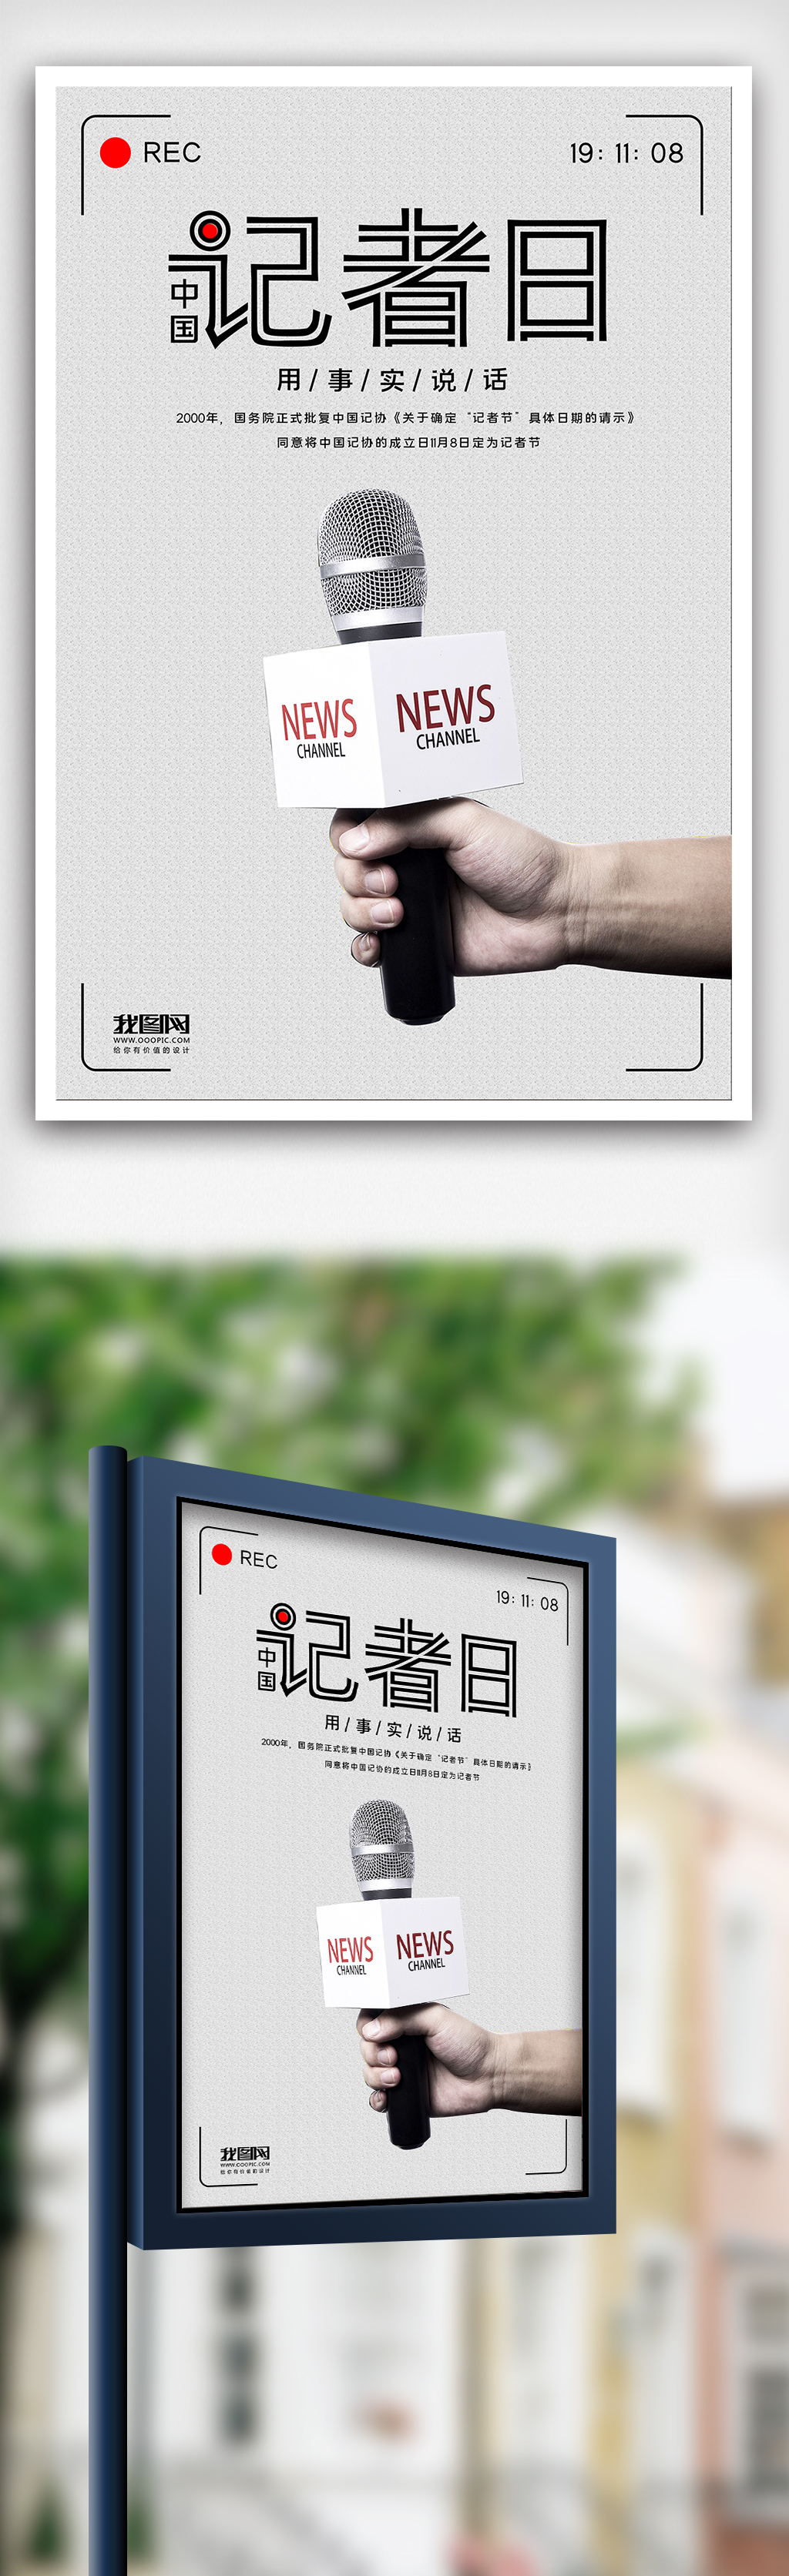 2019中国记者日采访话筒创意海报图片